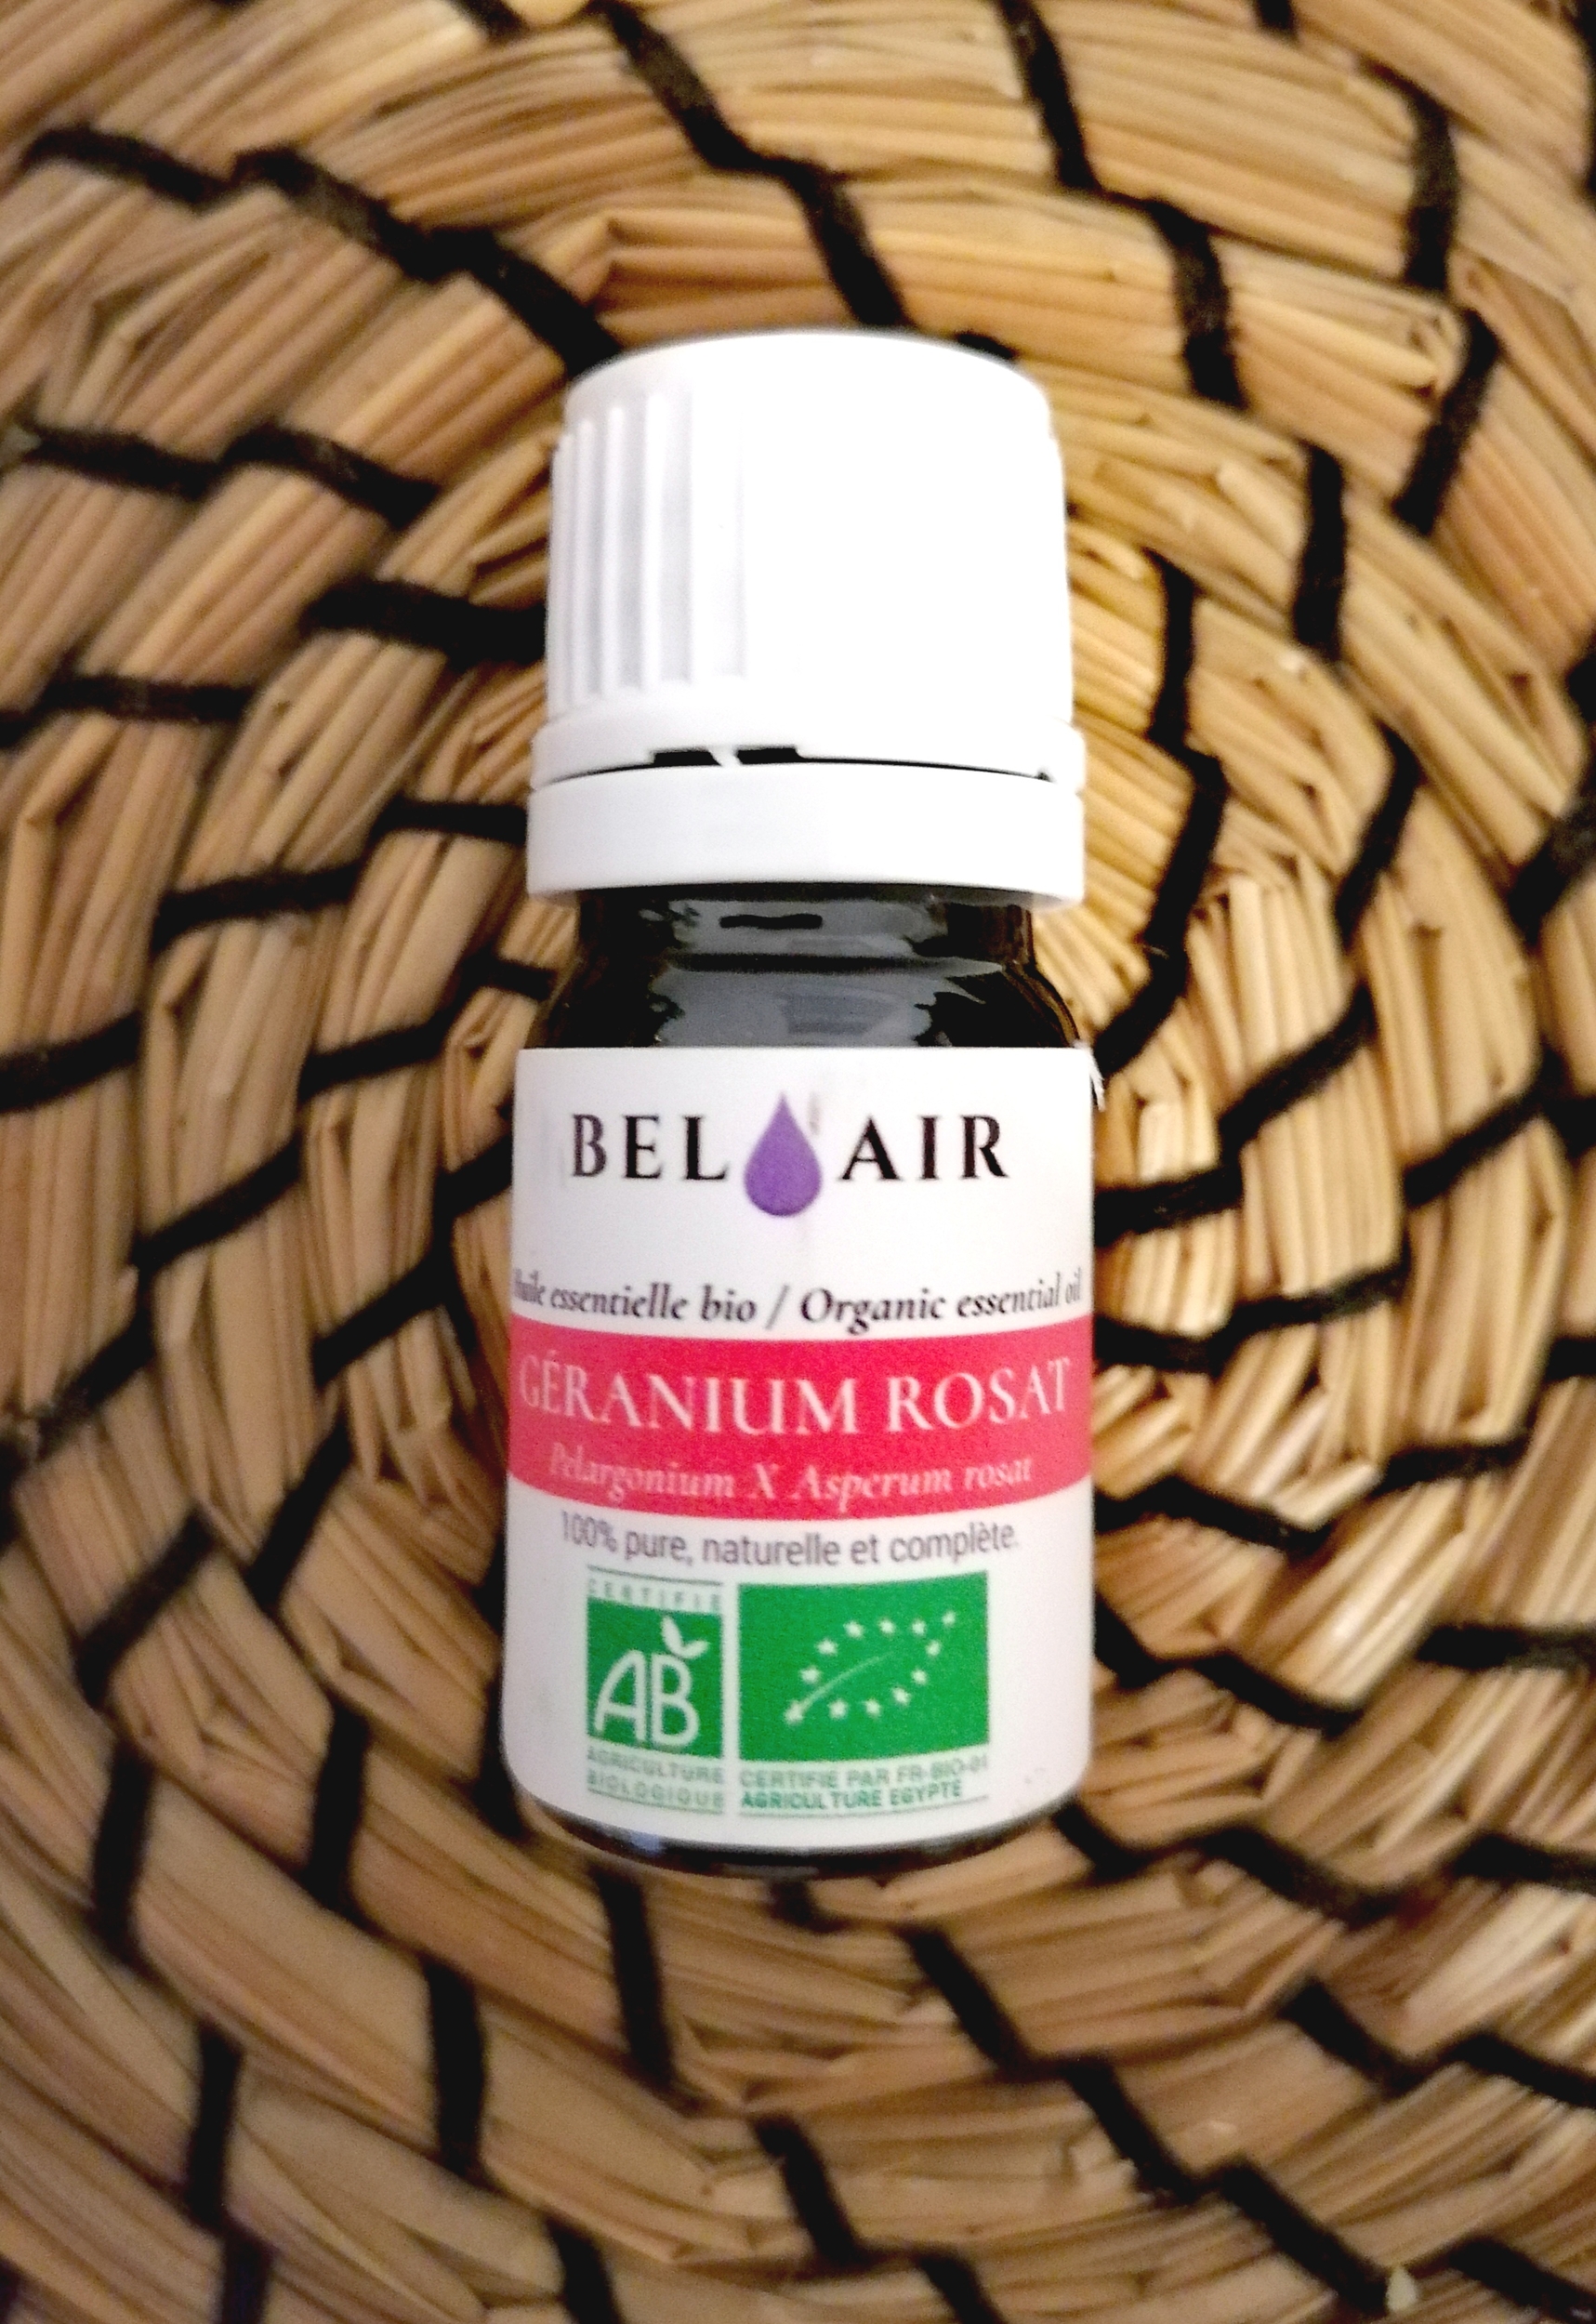 he-Geranium-Rosat-huile-essentielle-bel-air-bio-herboristerie